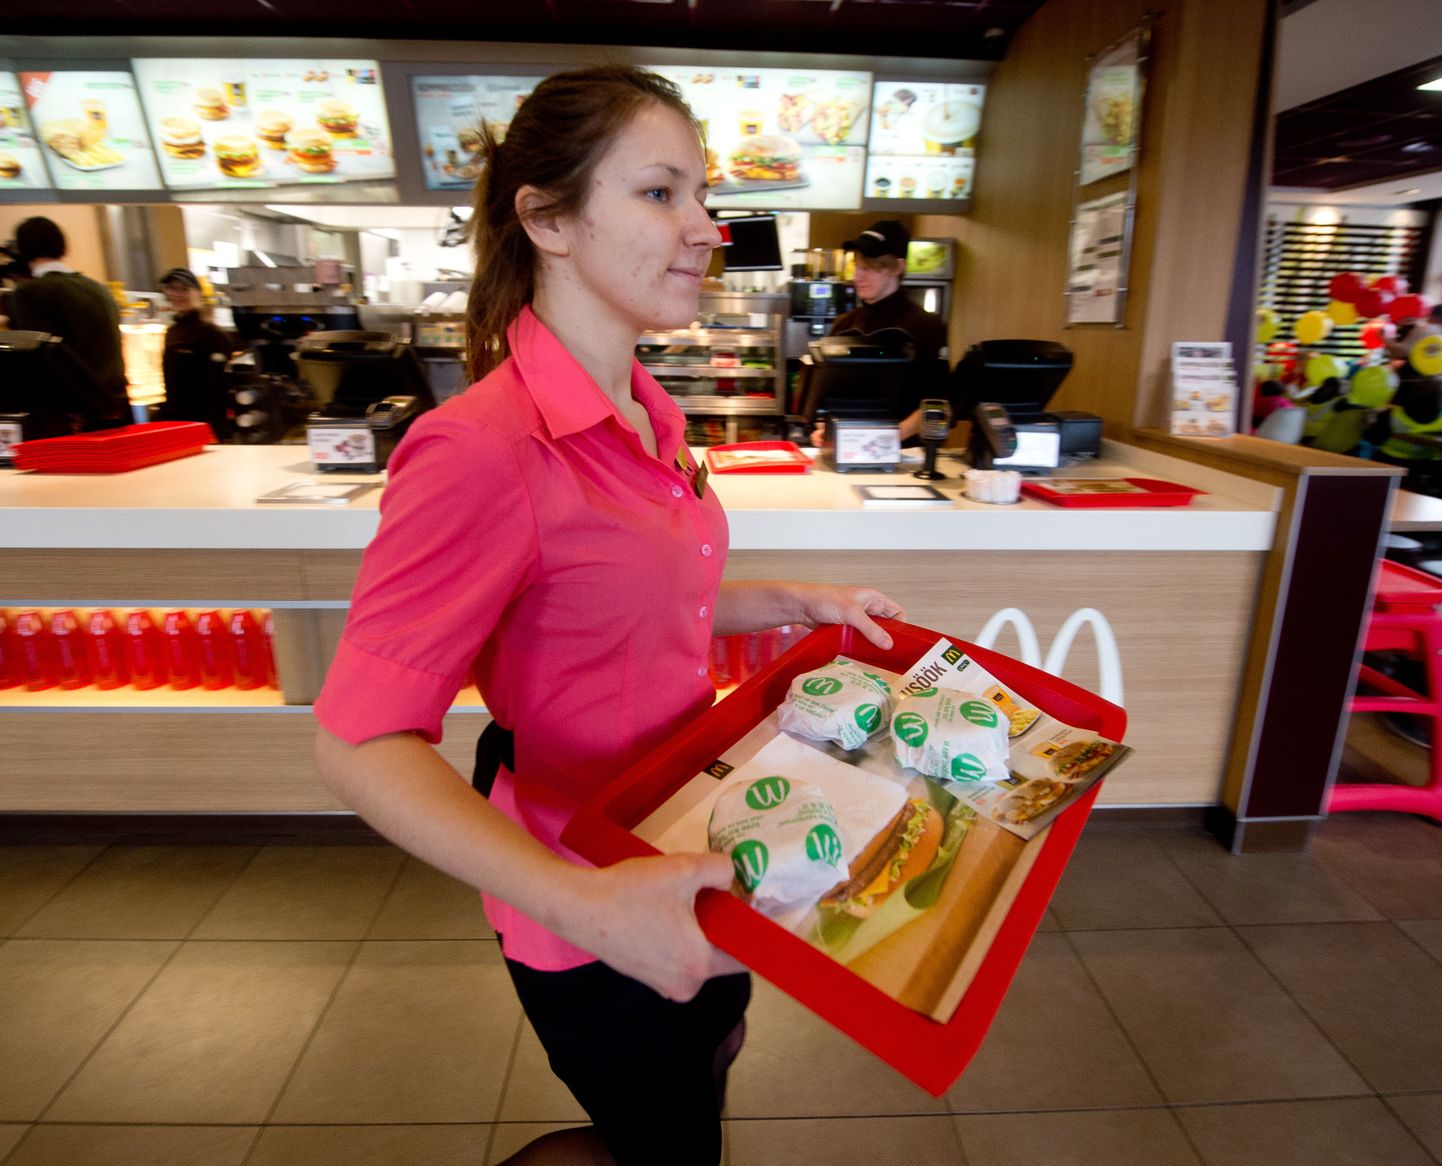 Paberkottide puudusel julgustab McDonalds serveerima toitu kandikul.